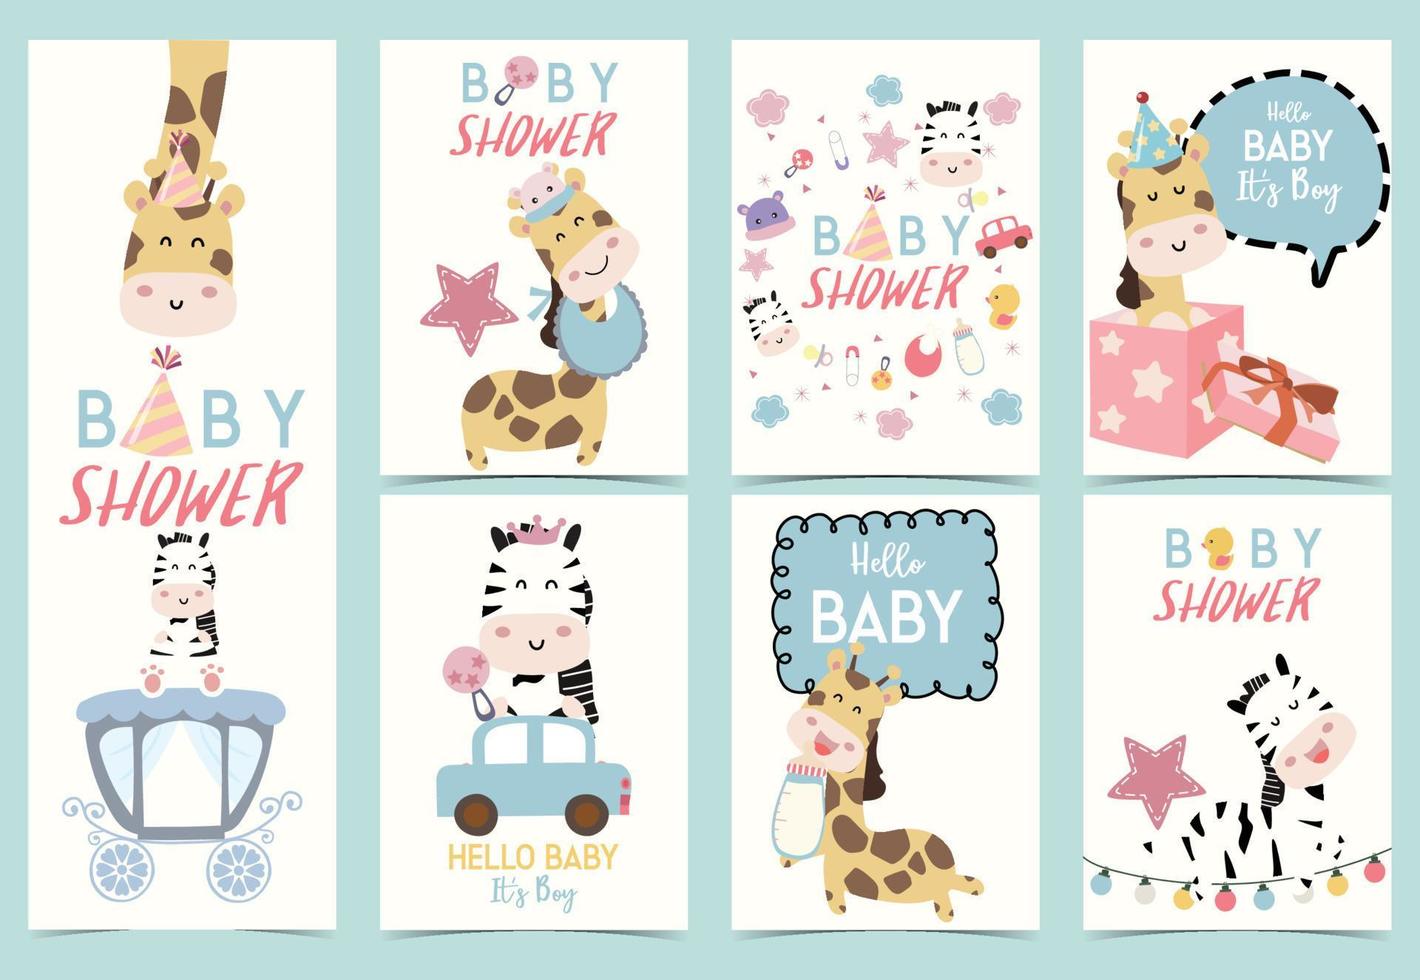 coleção de chá de bebê com zebra, girafa, chapéu, estrela, carro e pato vetor